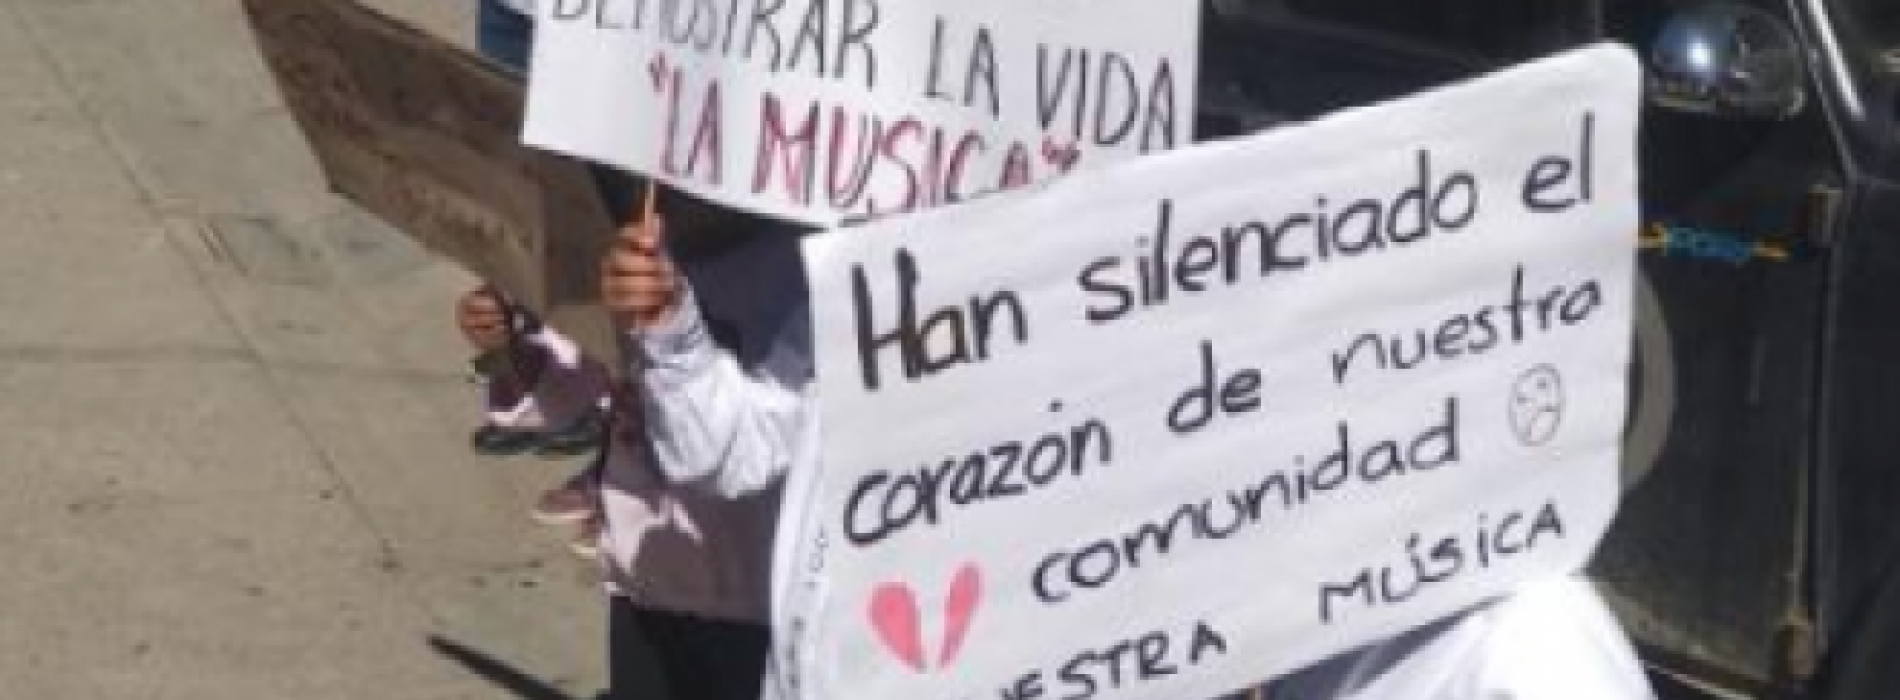 Niños de la Banda Filarmónica exigen justicia por robo de instrumentos